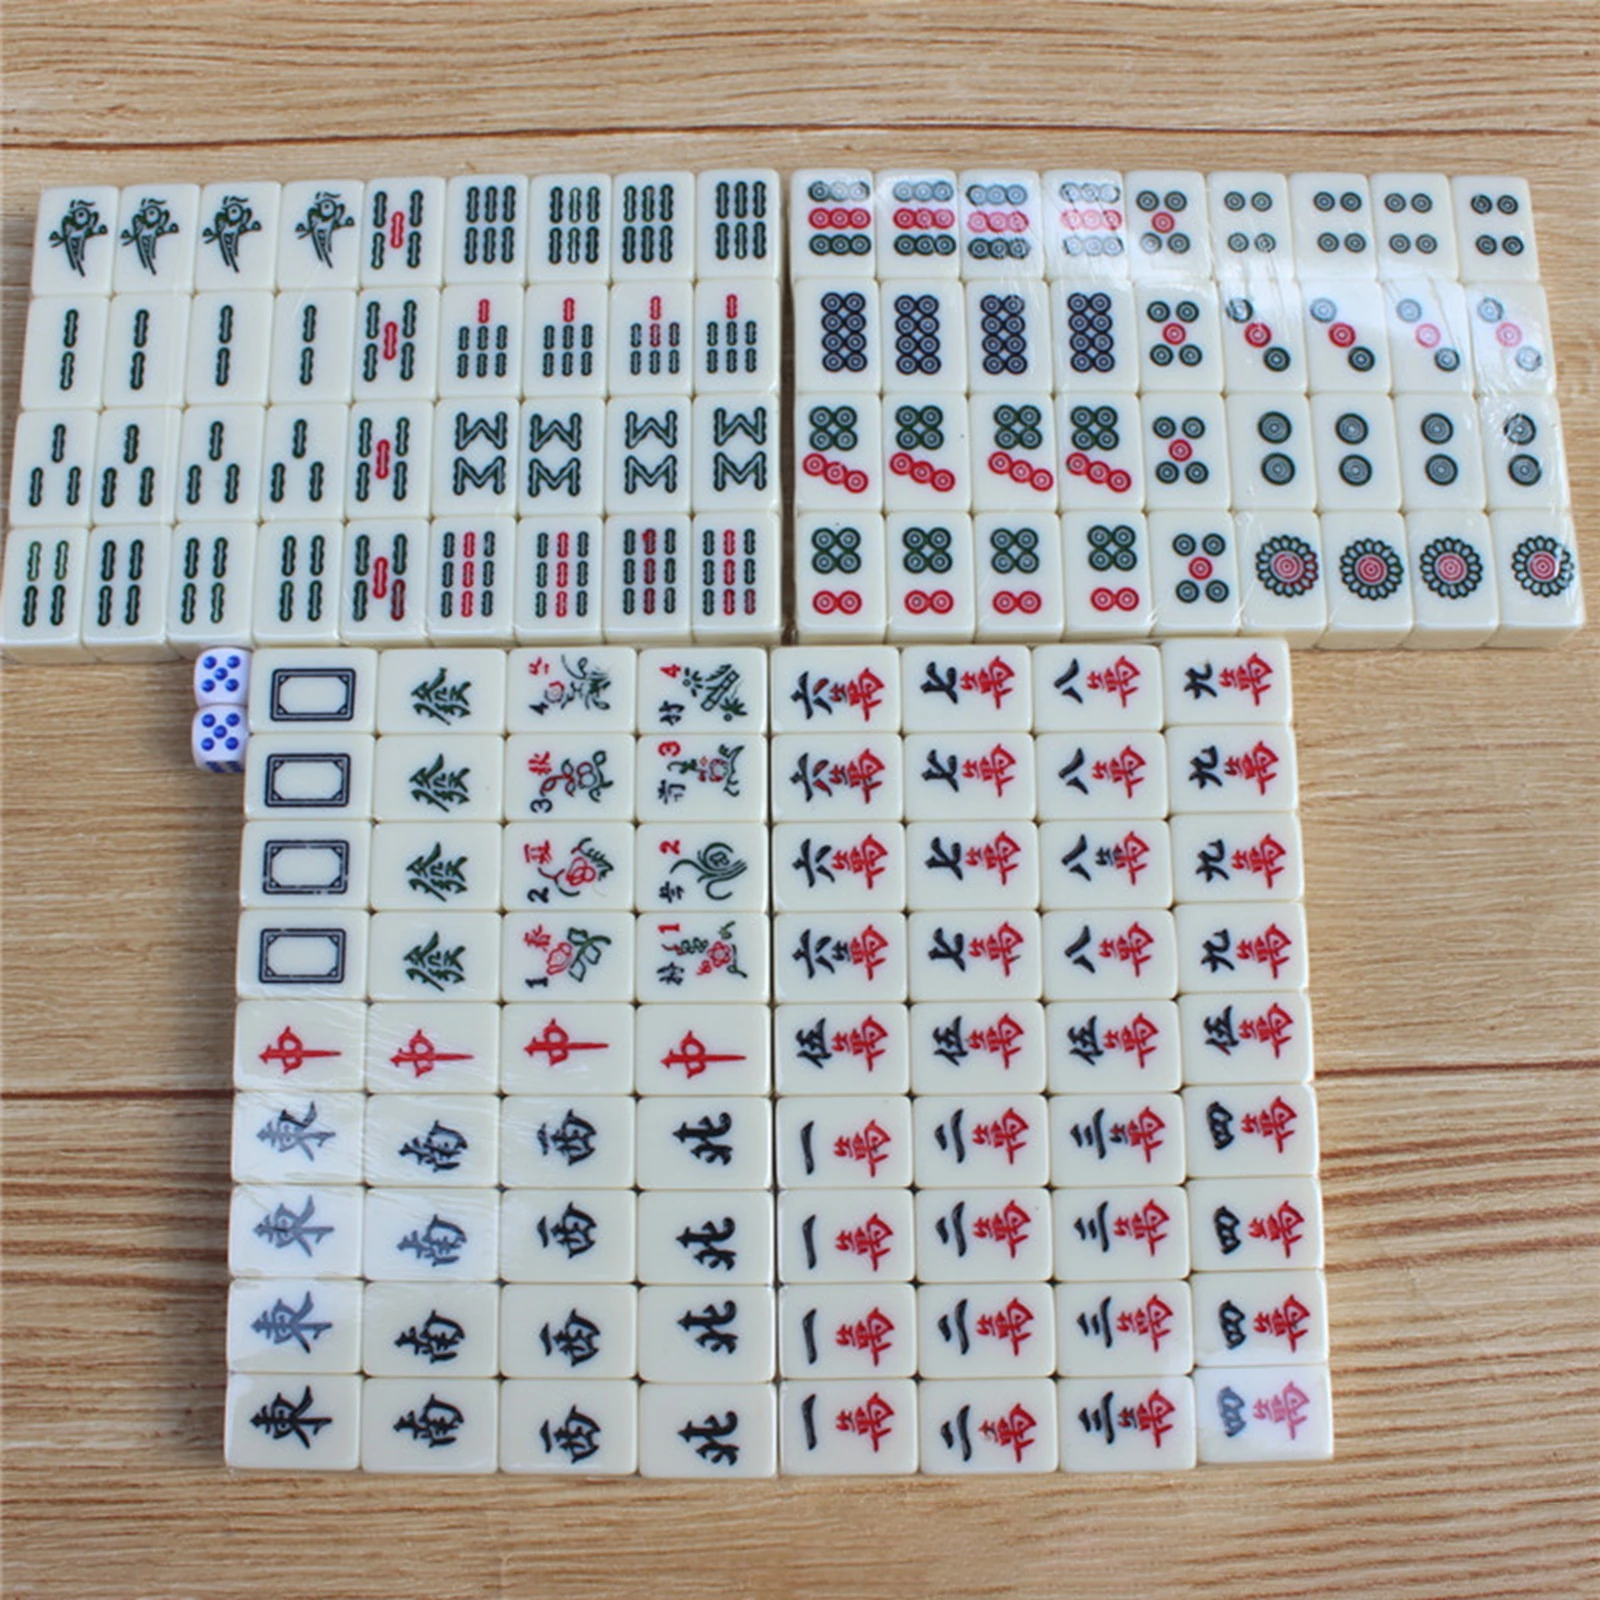 Small Portable Chinese Mahjong Set Board Game mahjong with Storage Box Traditional for family game 144 Mahjong Tile